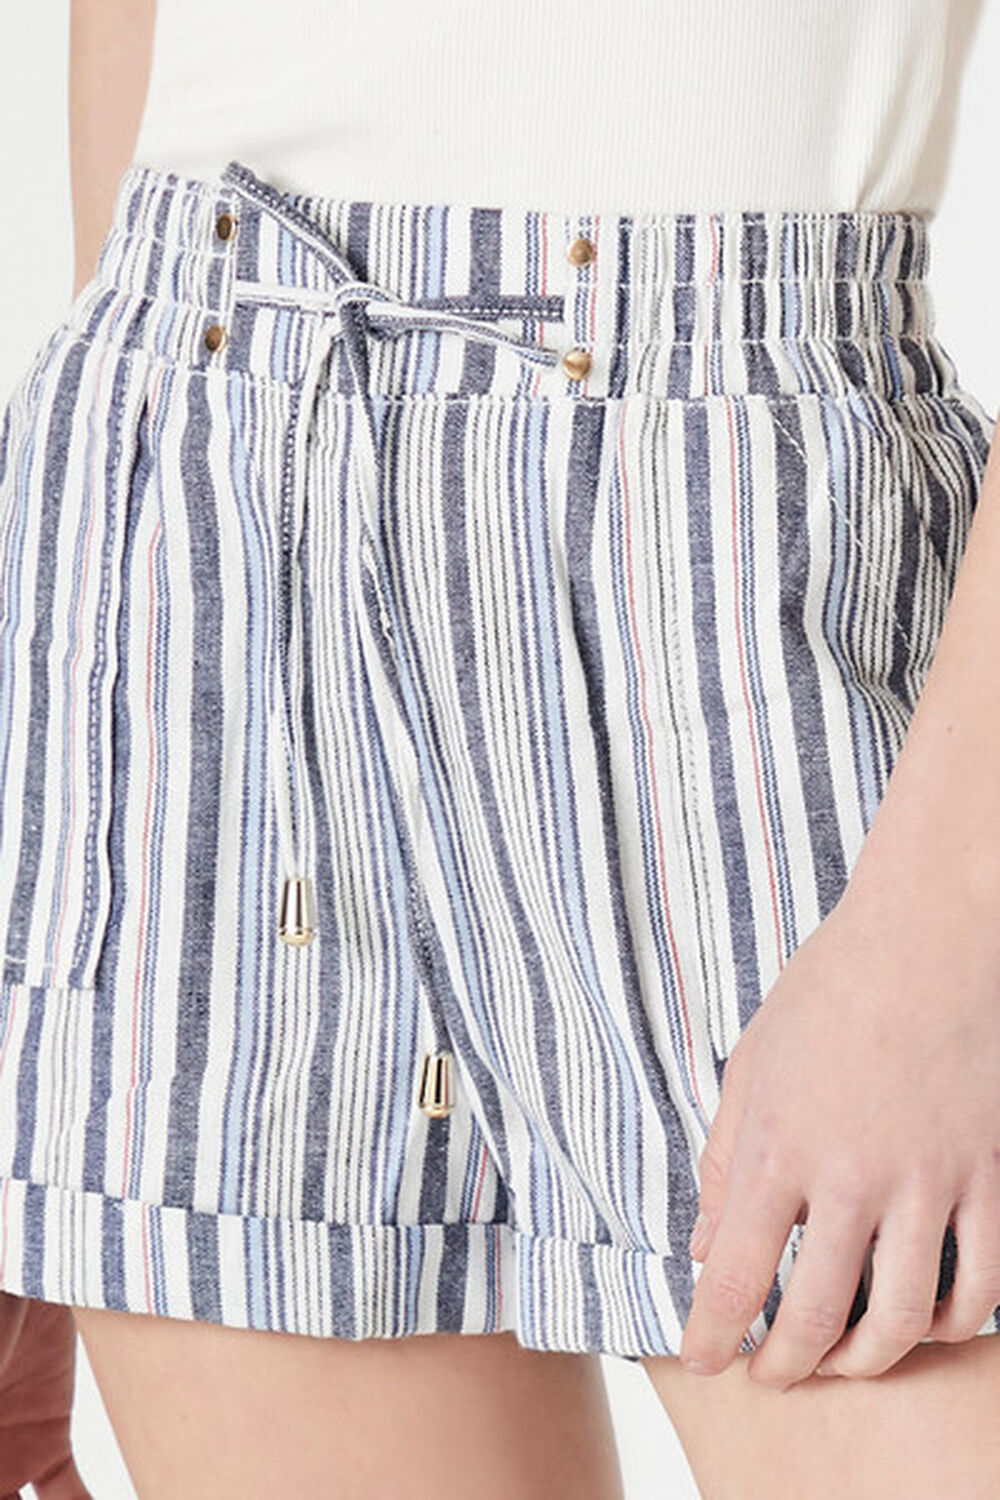 Striped Toggle Drawstring Shorts